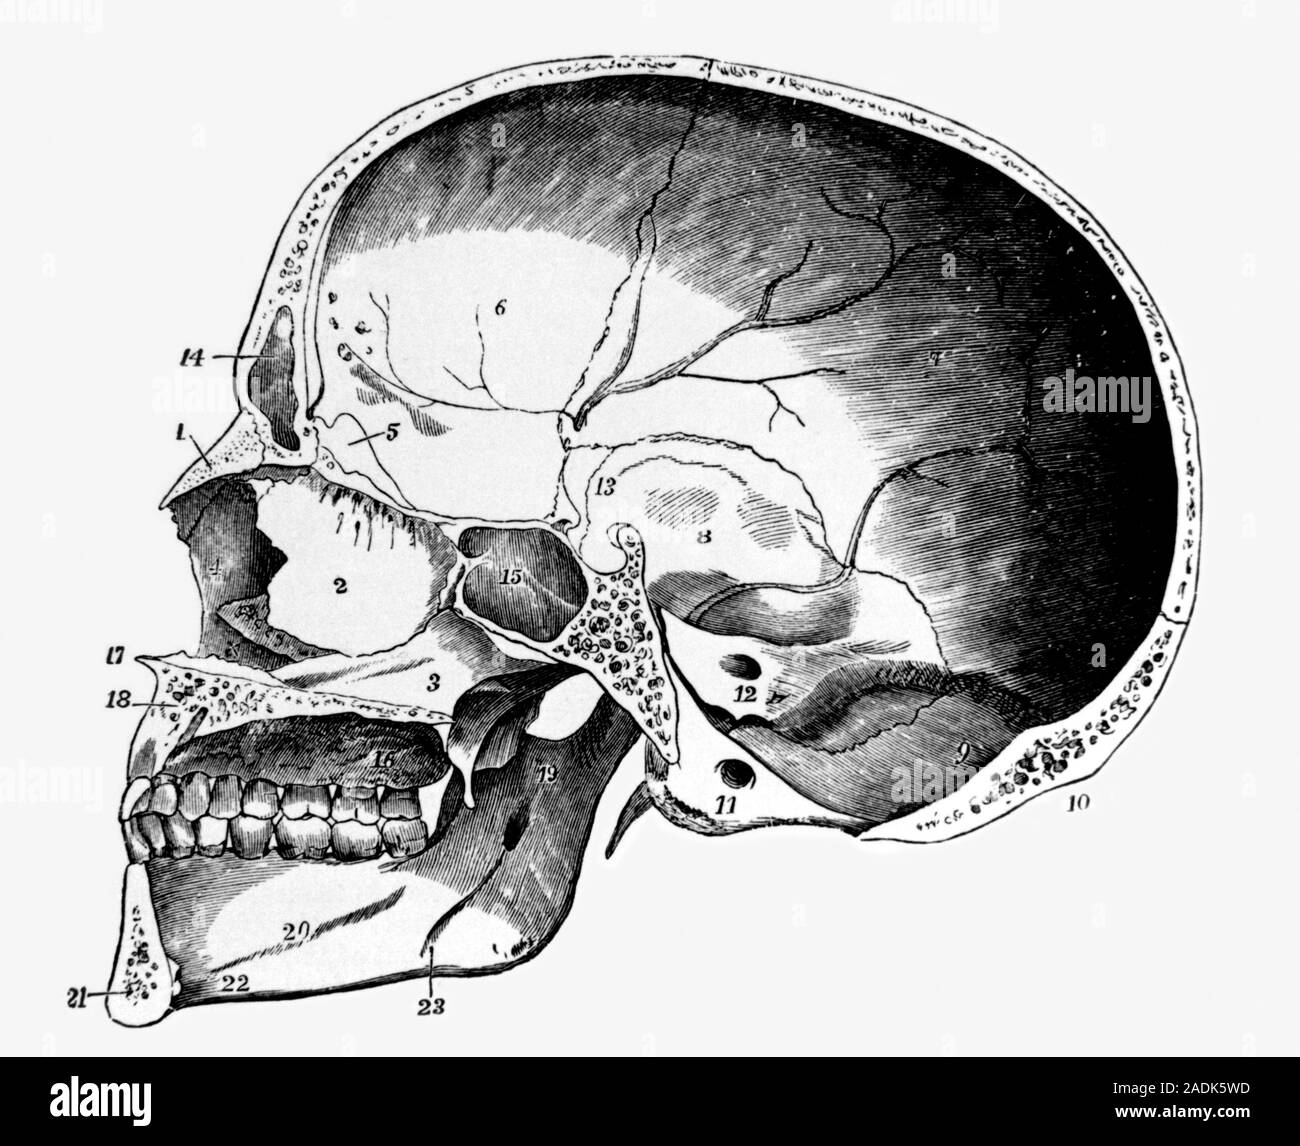 Строение черепа Сагиттальный распил